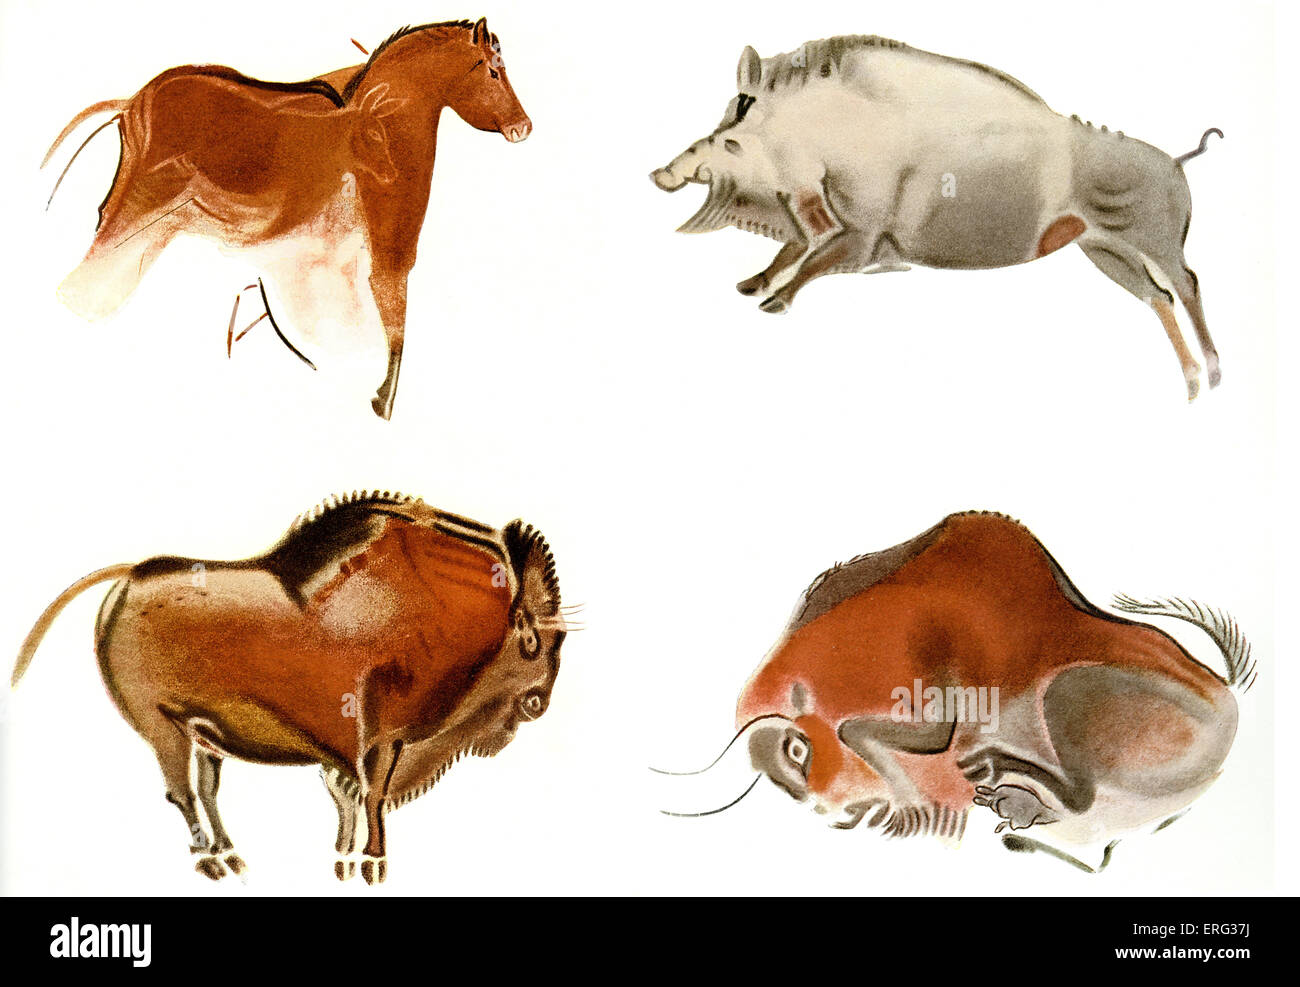 Peintures rupestres dans le nord de l'Espagne y compris un cheval sauvage, sanglier et deux bisons de charge . Altamira (espagnol pour 'view') est un Banque D'Images